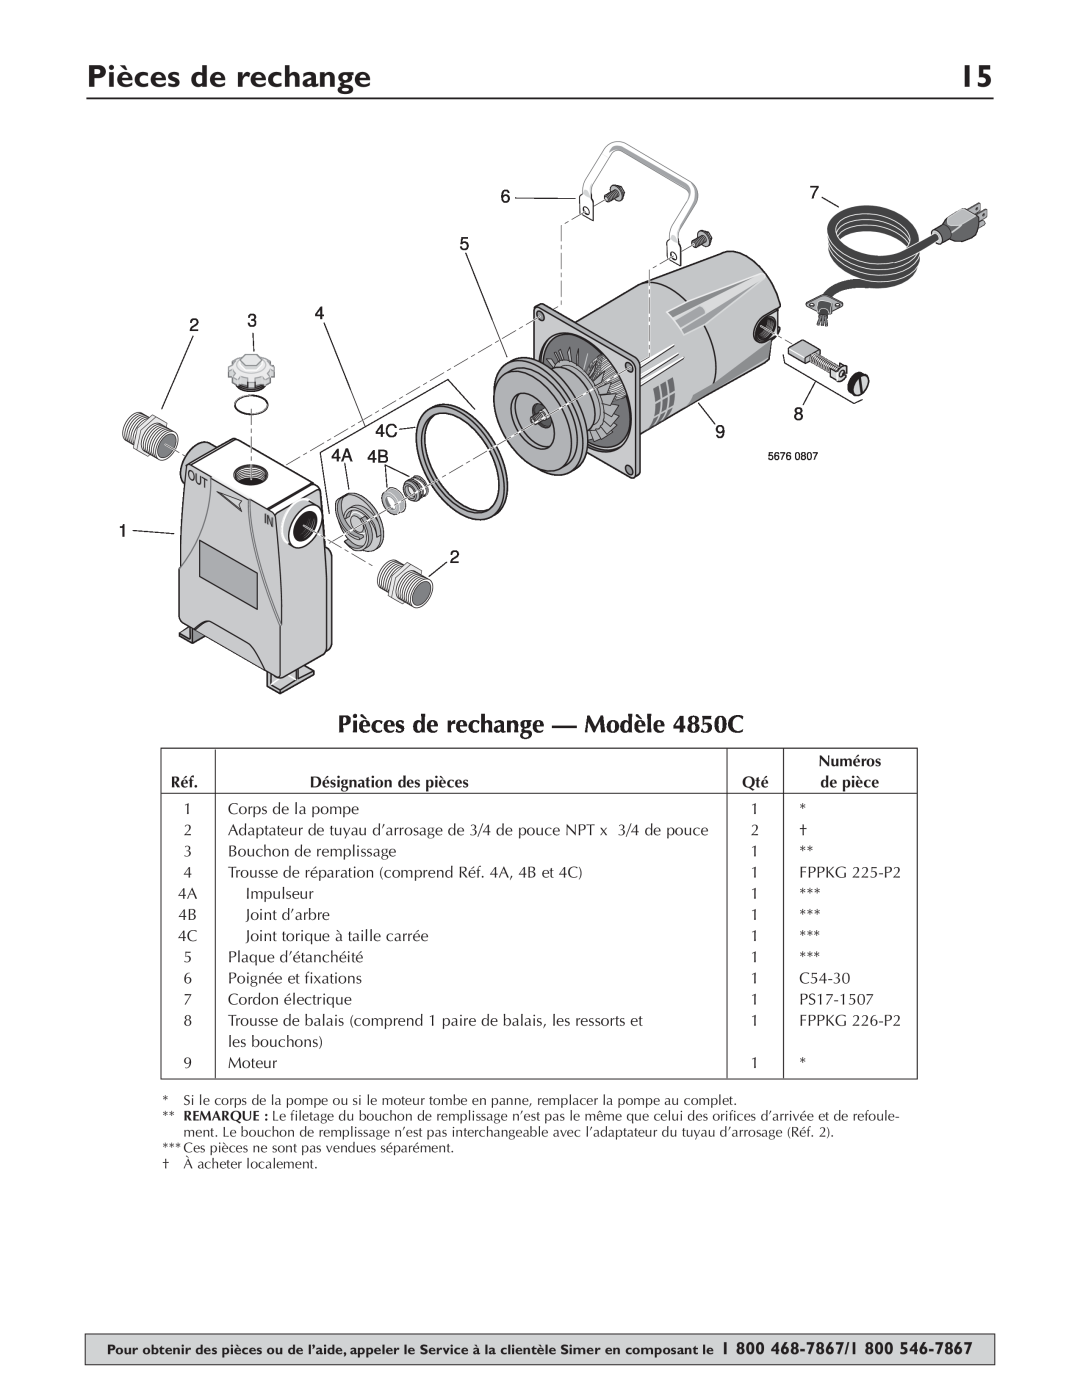 Simer Pumps owner manual Pièces de rechange - Modèle 4850C 